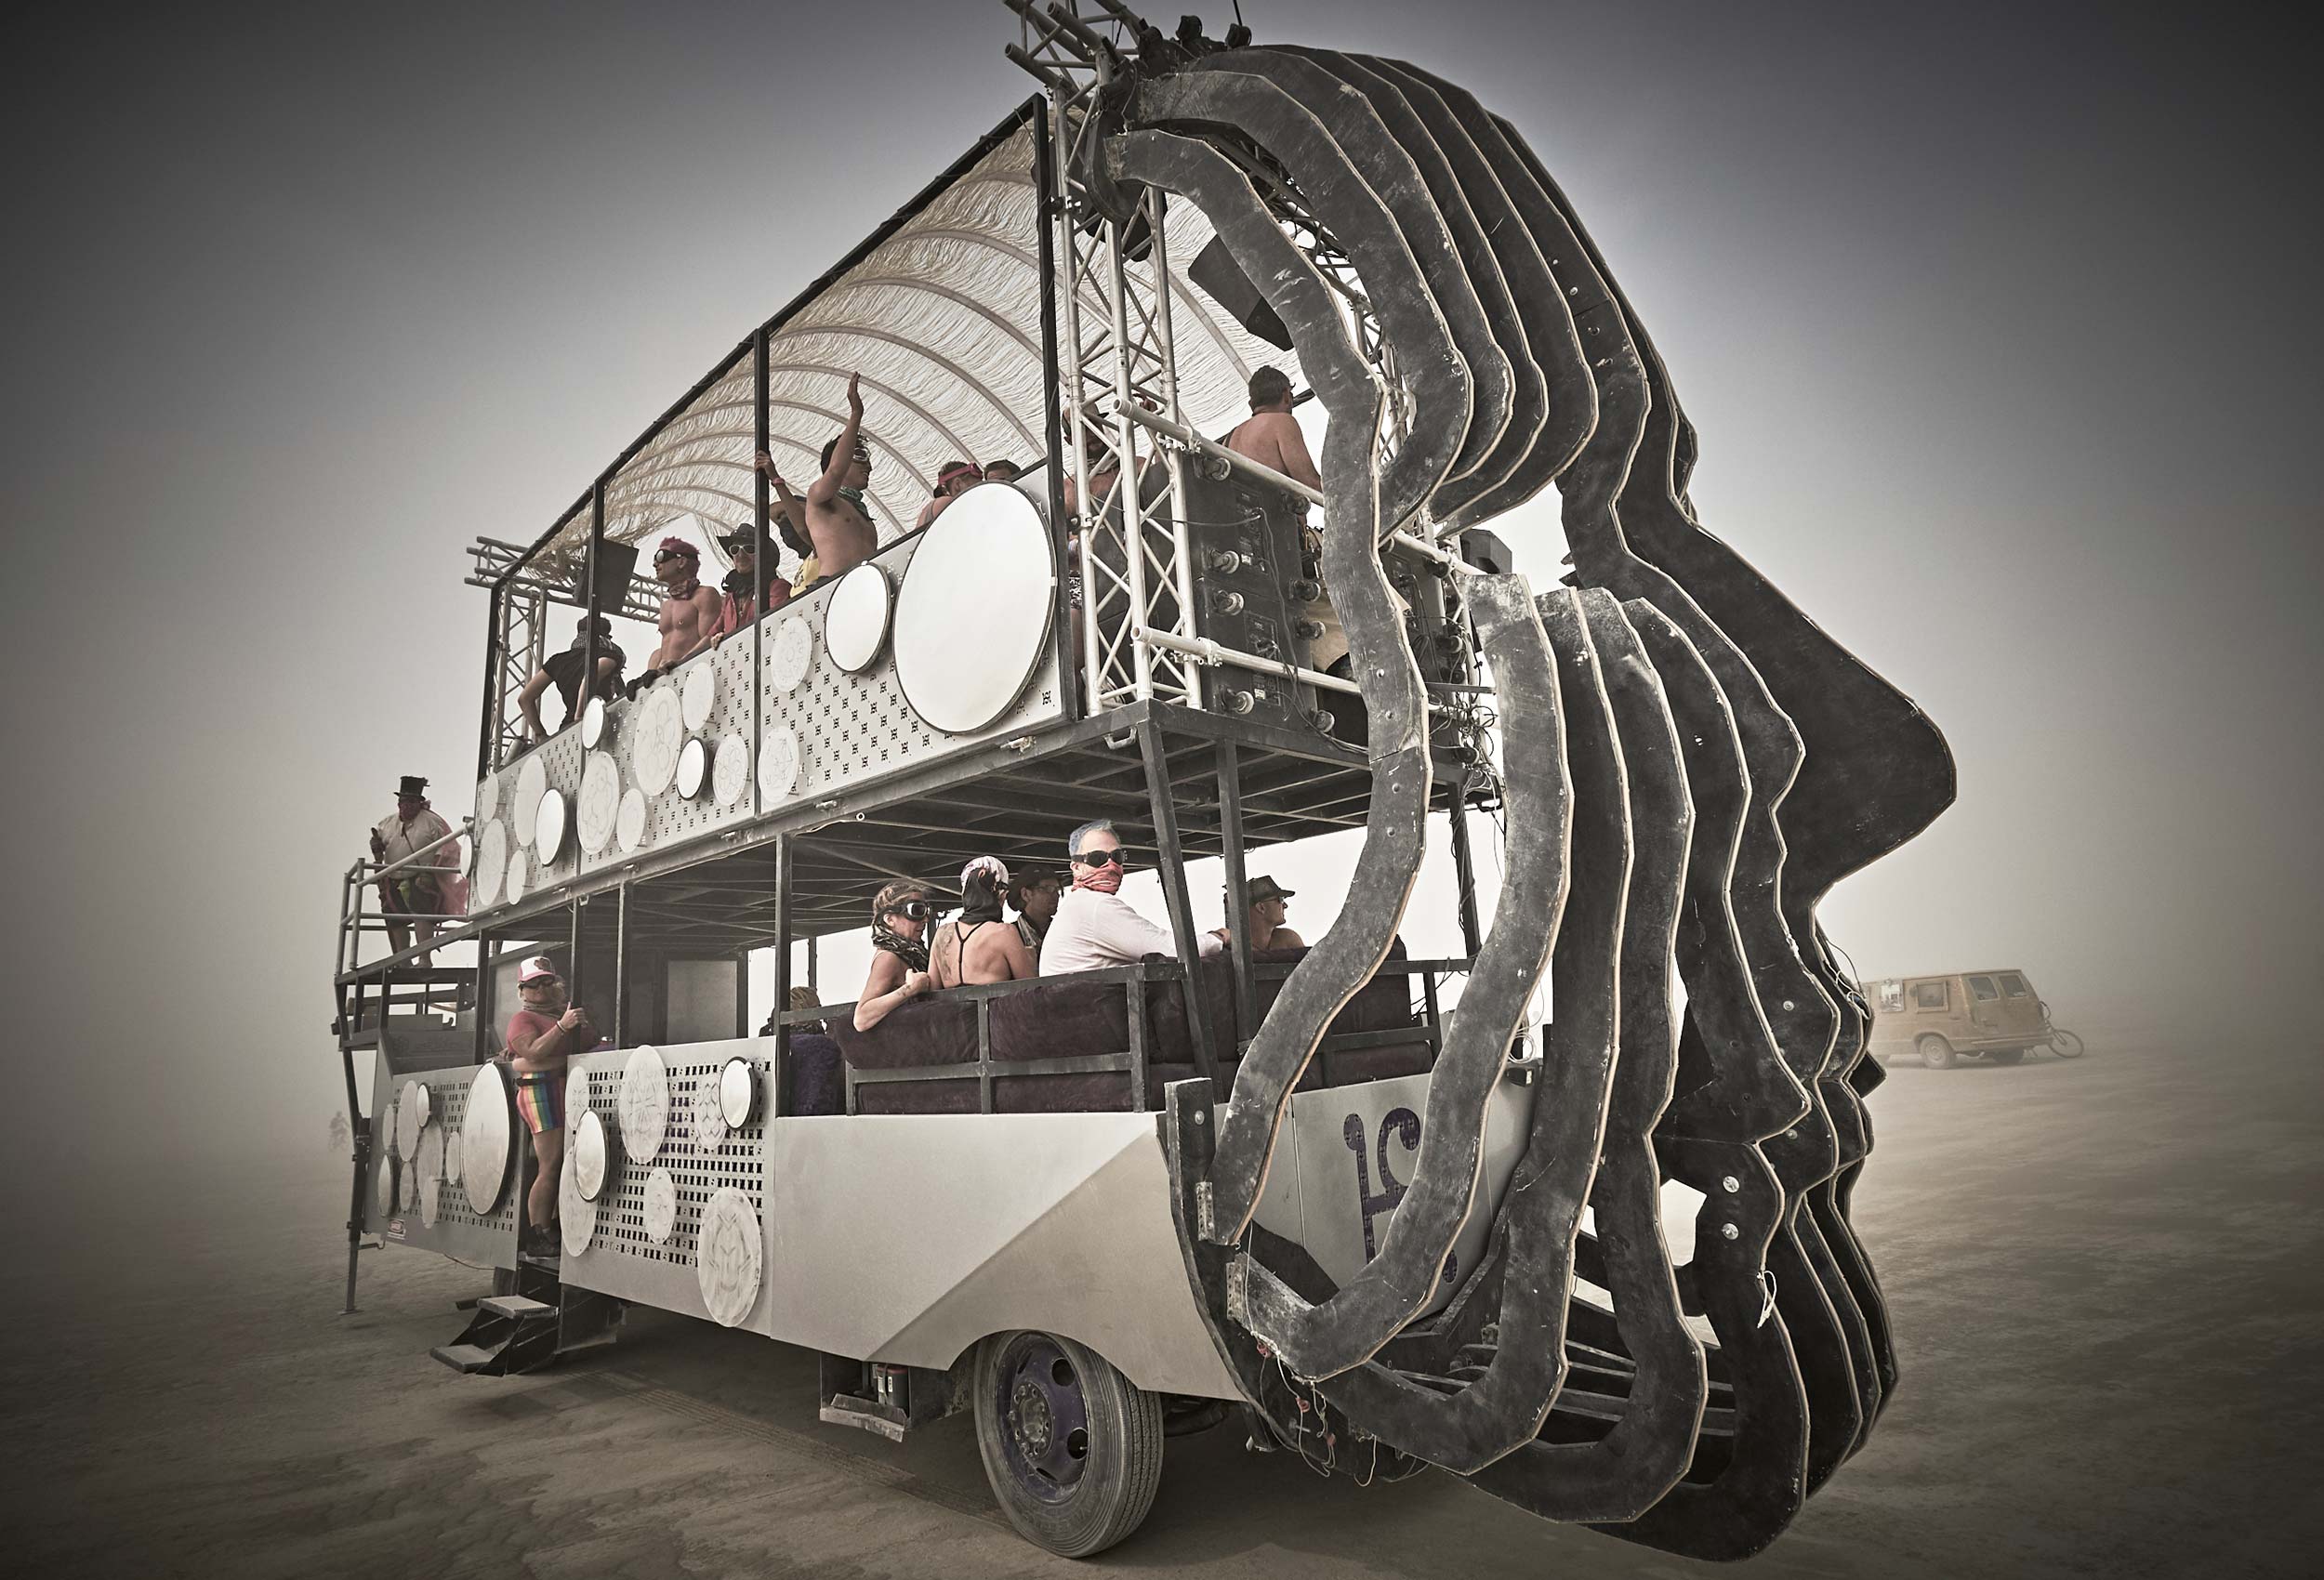 Nibauer | Burning Man NV